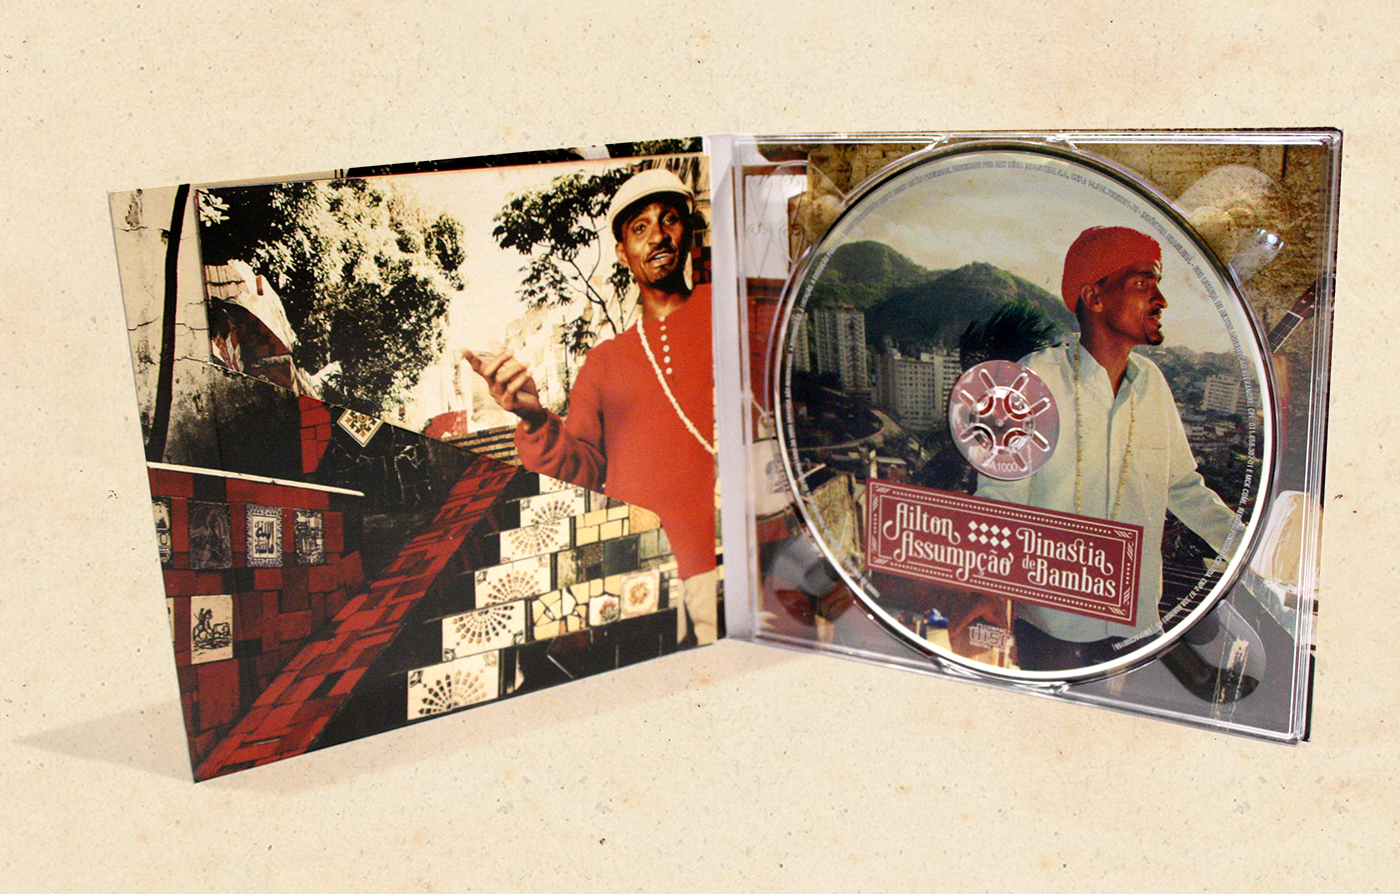 Ailton assumpção Samba cd digipack Album cover music type Packaging DINASTIA DE BAMBAS